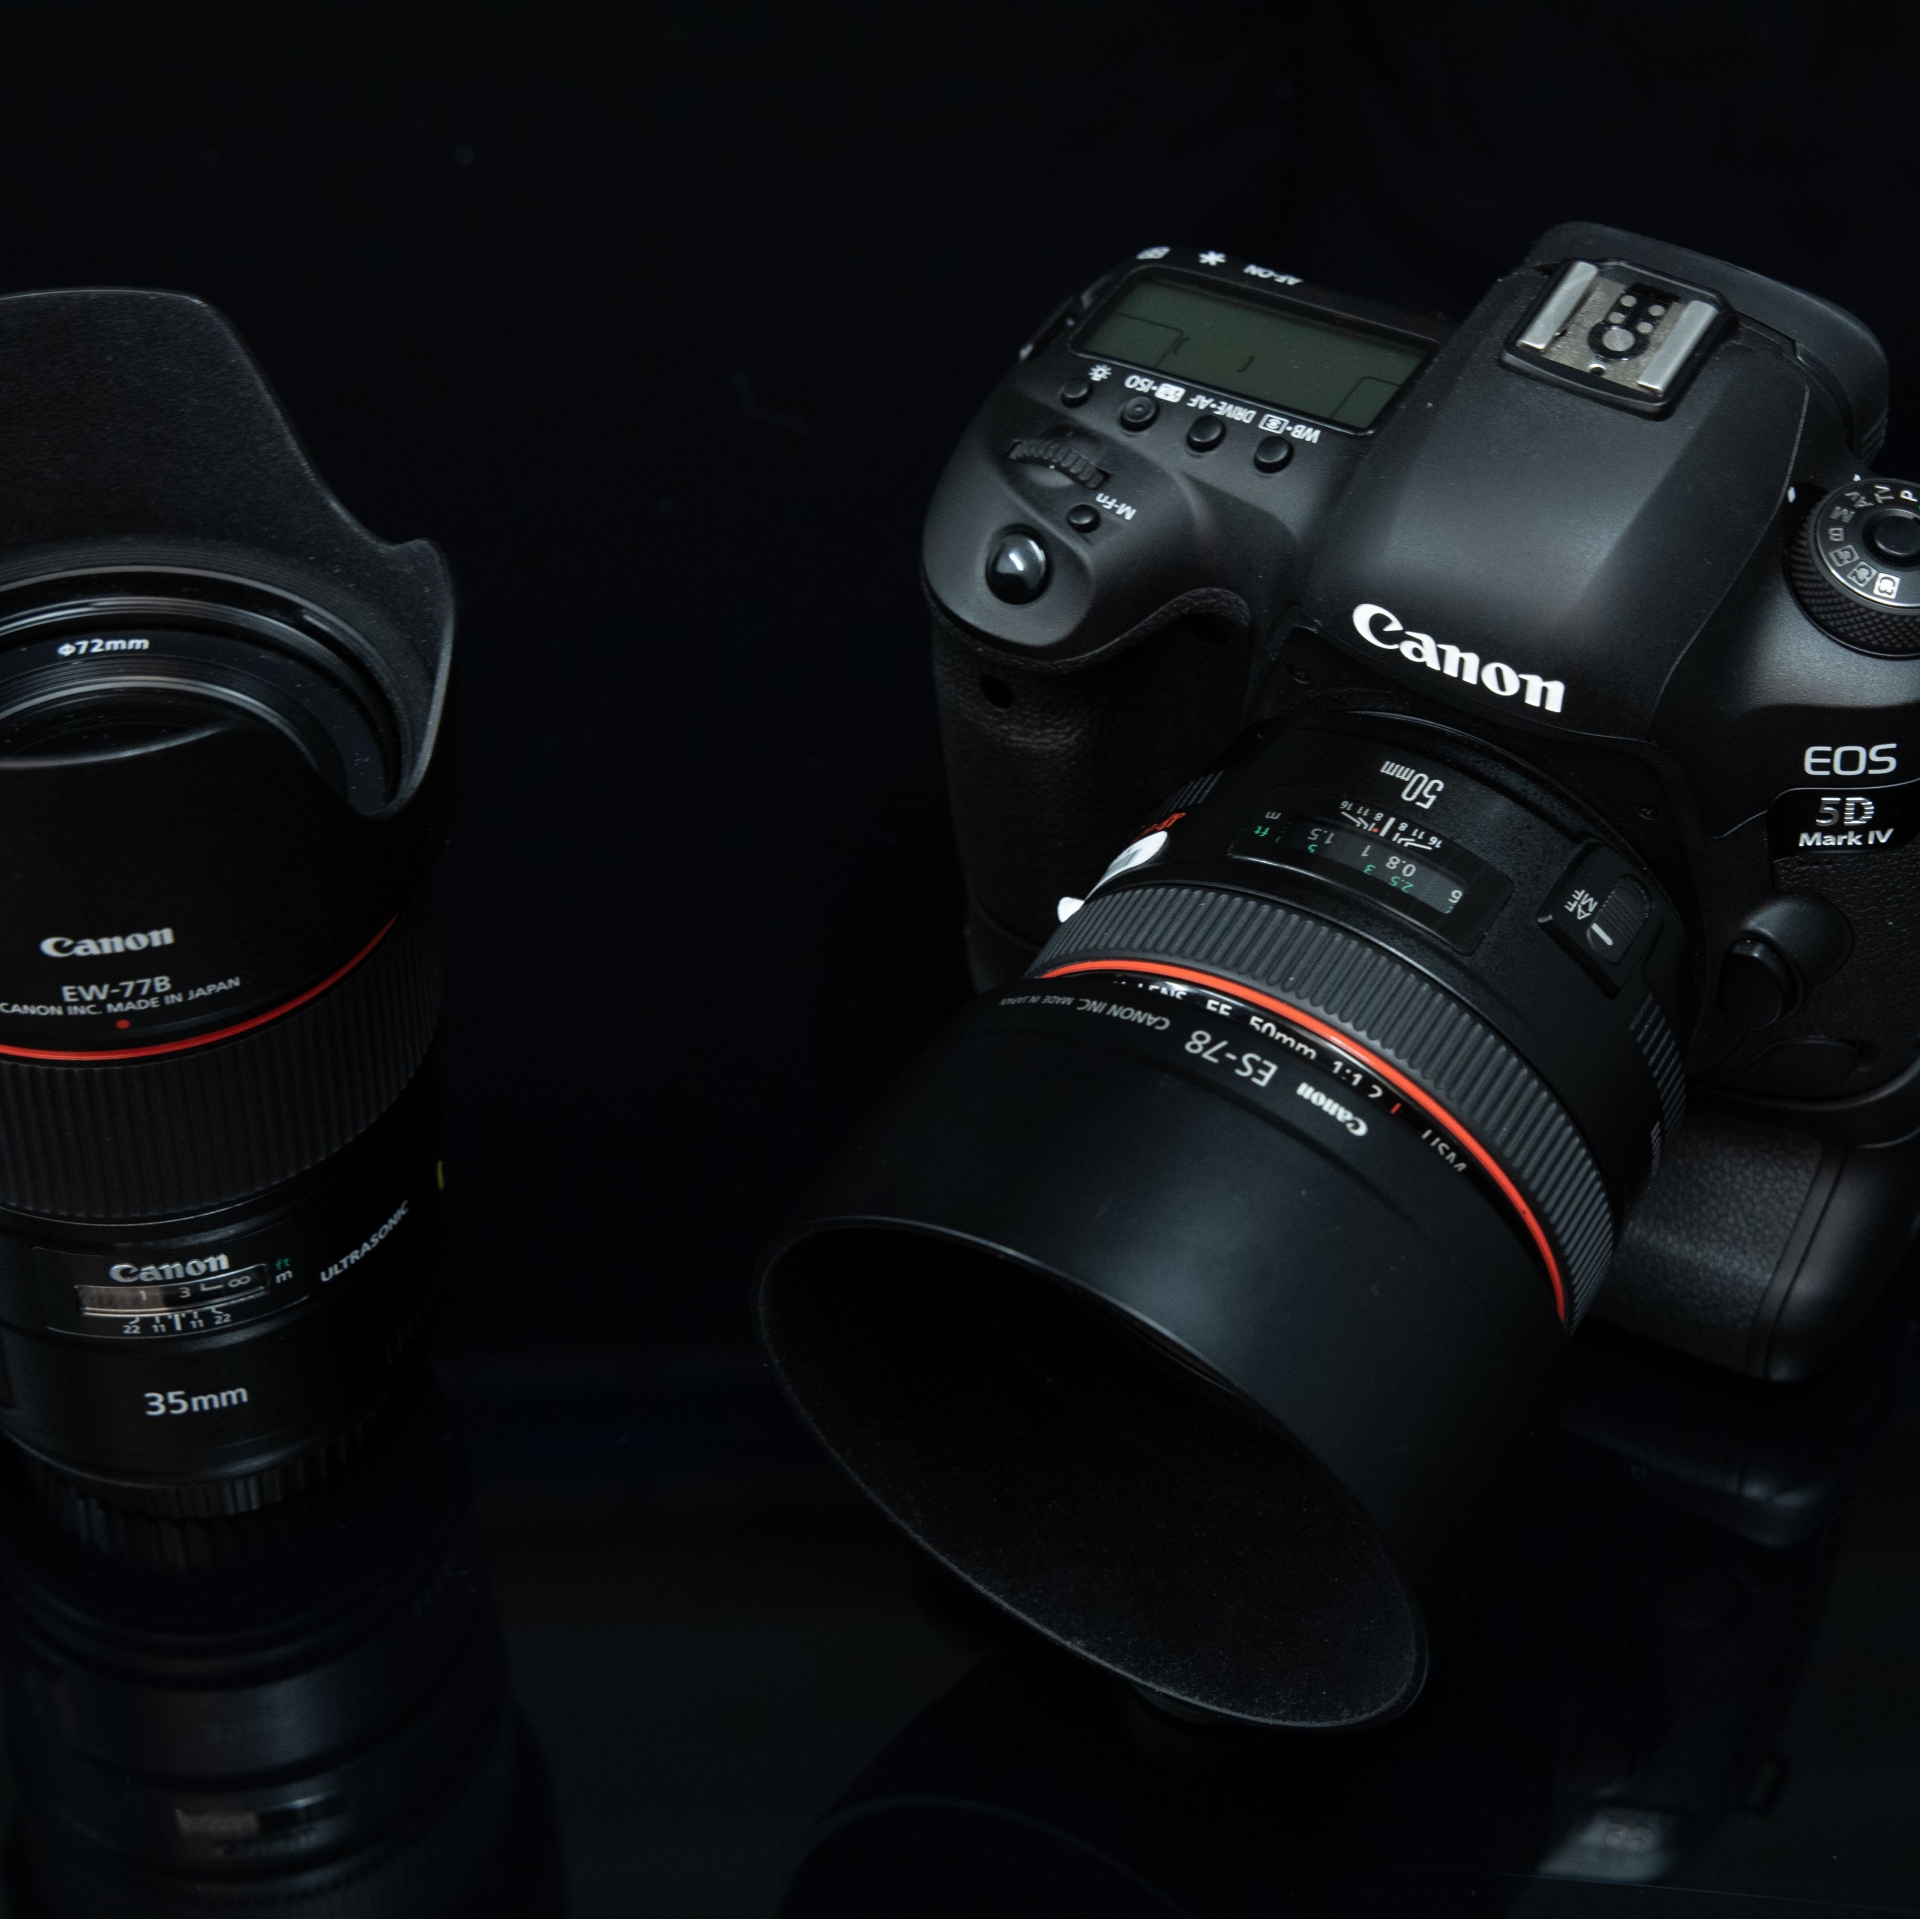 35mm-Objektiv, APS-C-Kamera, 50mm-Objektiv, Vollformatkamera wie der EOS 5D Mark IV